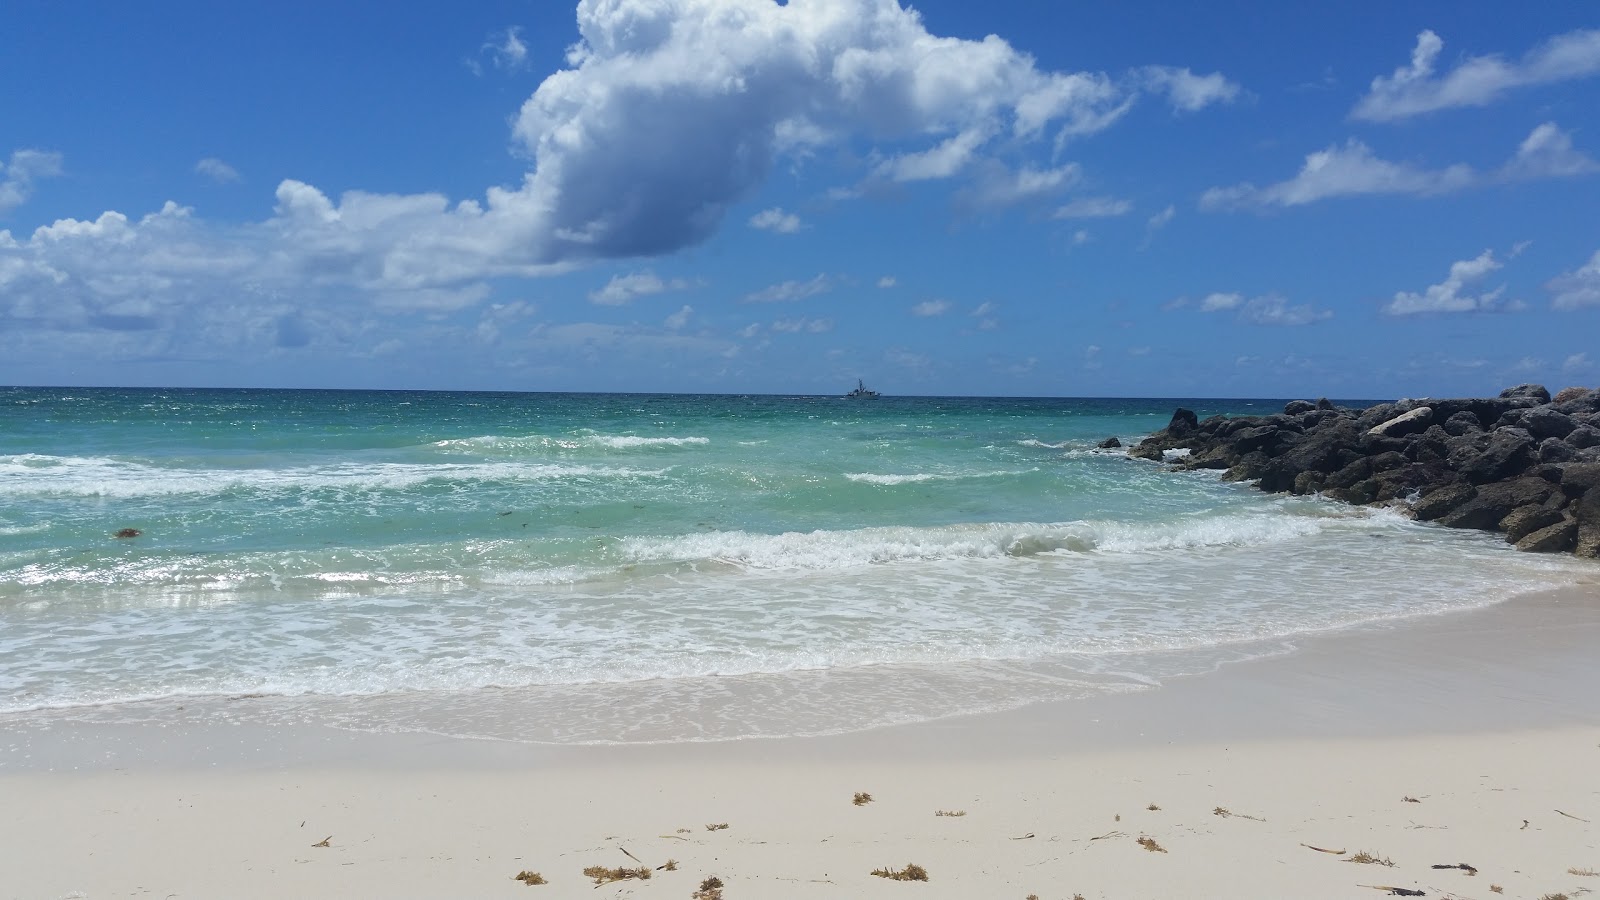 Φωτογραφία του East Palm beach με μακρά ευθεία ακτή